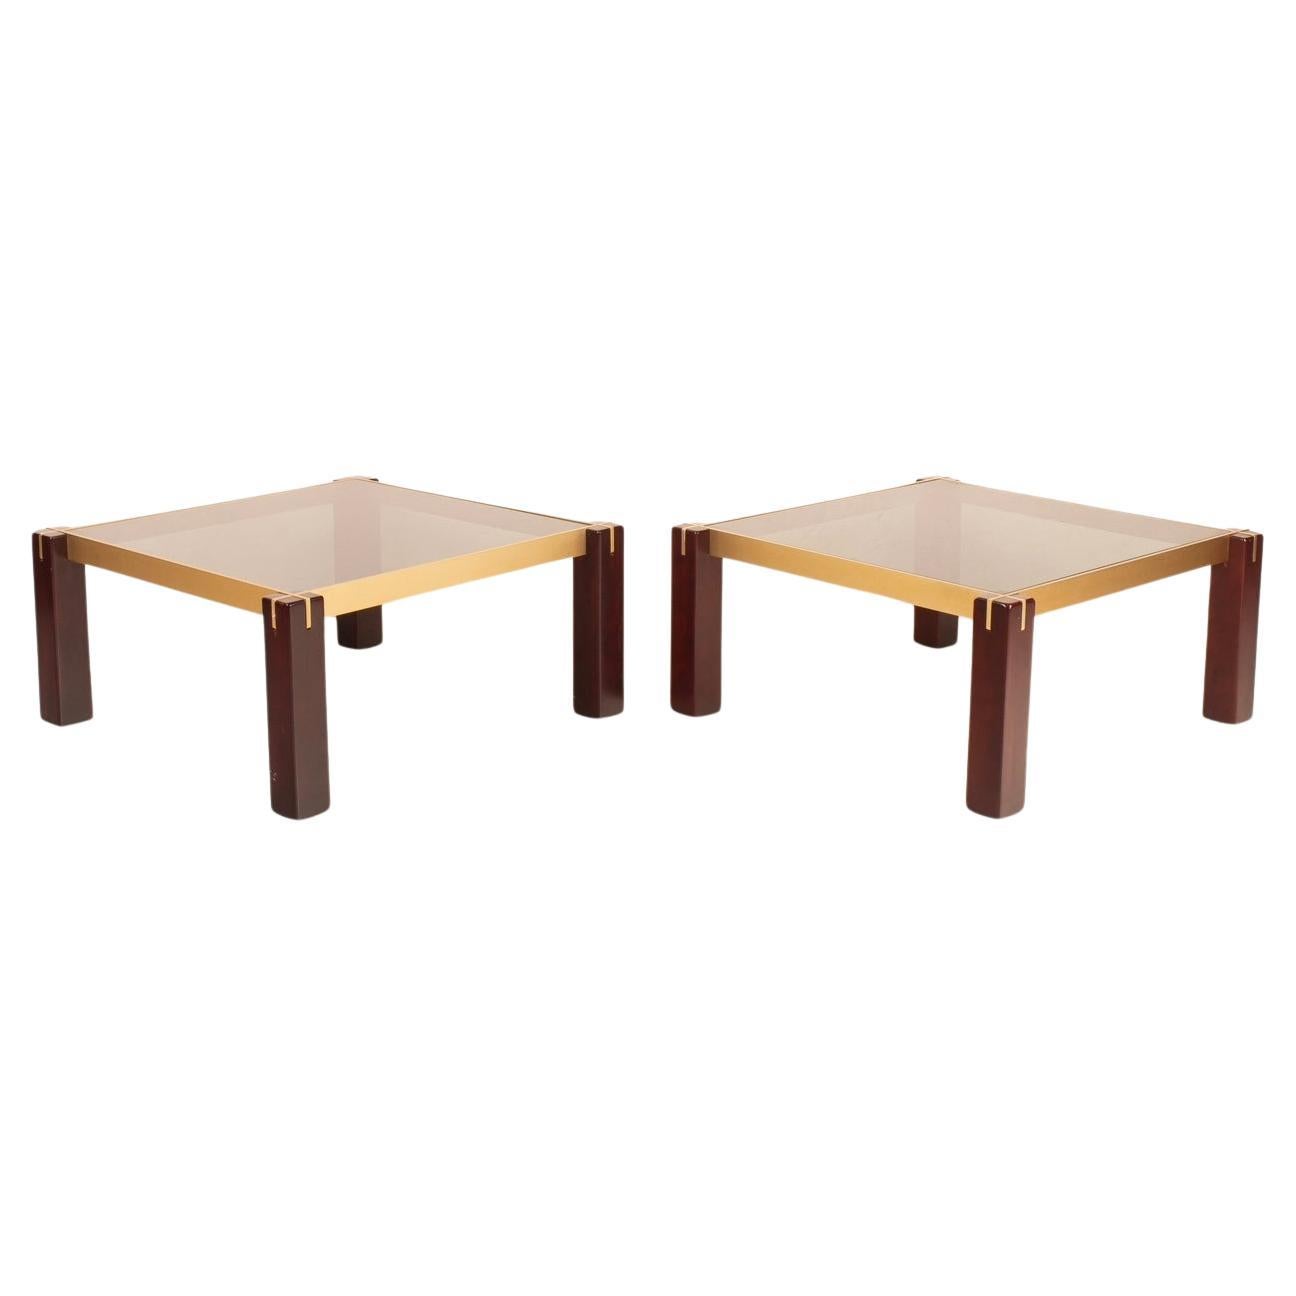 Pair of "Faraone" side tables by Renato Polidori for Skipper